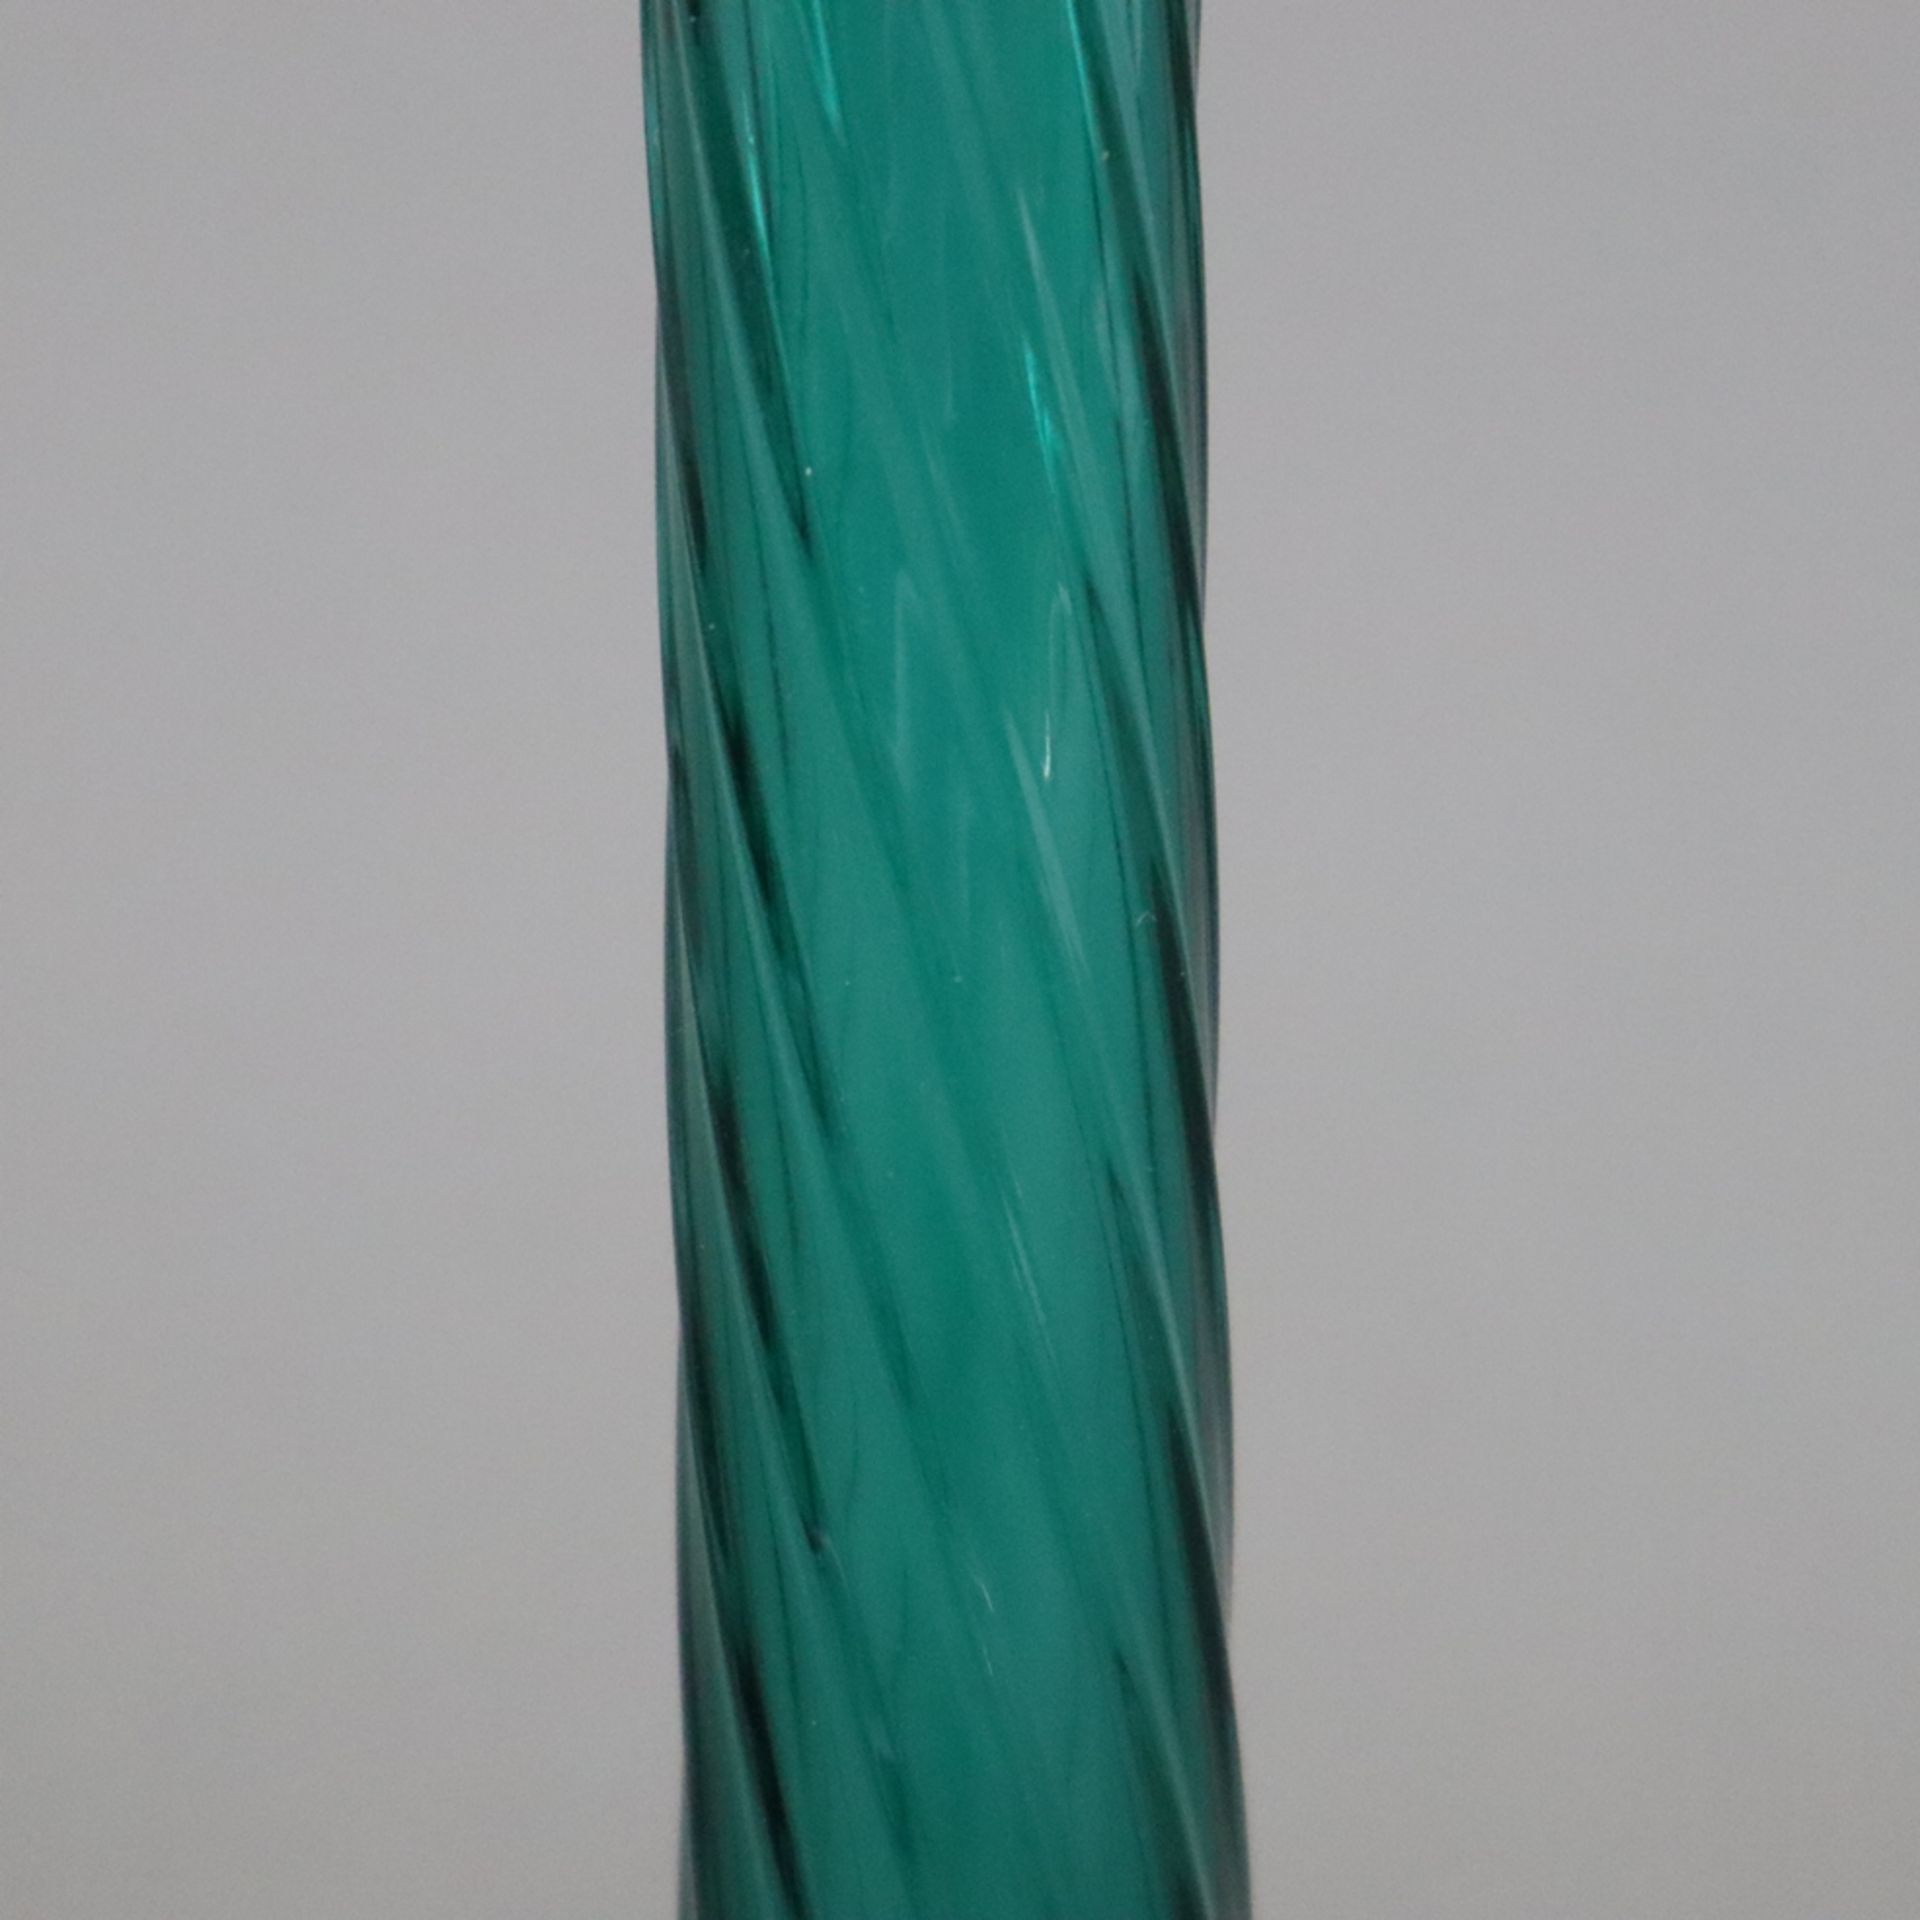 Enghalsvase - Murano, bläulich grünes Glas, über rundem Fuß konischer Korpus mit weit ausgestelltem - Bild 3 aus 6